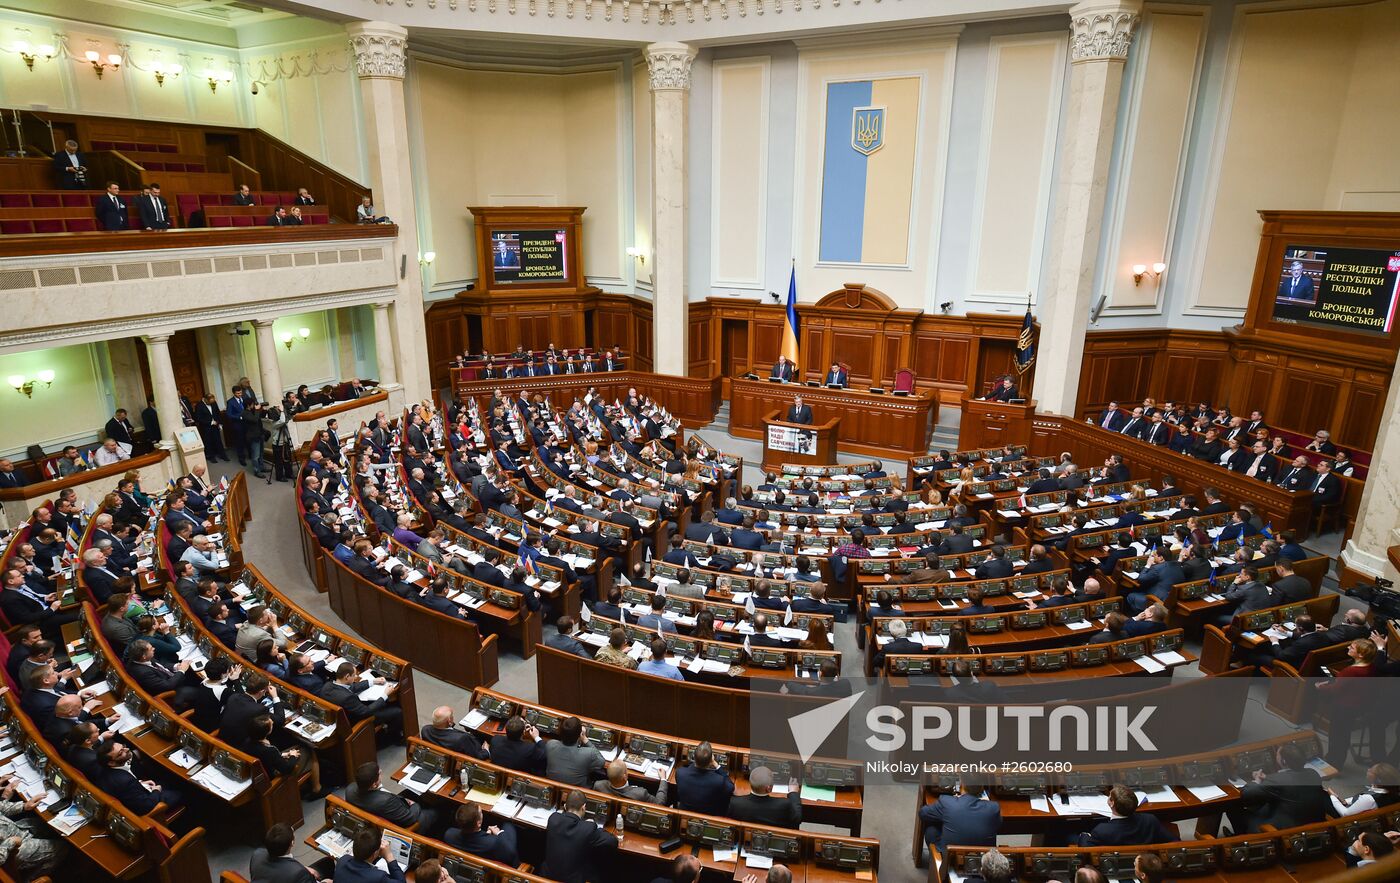 Parliament in session in Verkhovna Rada building, Kiev